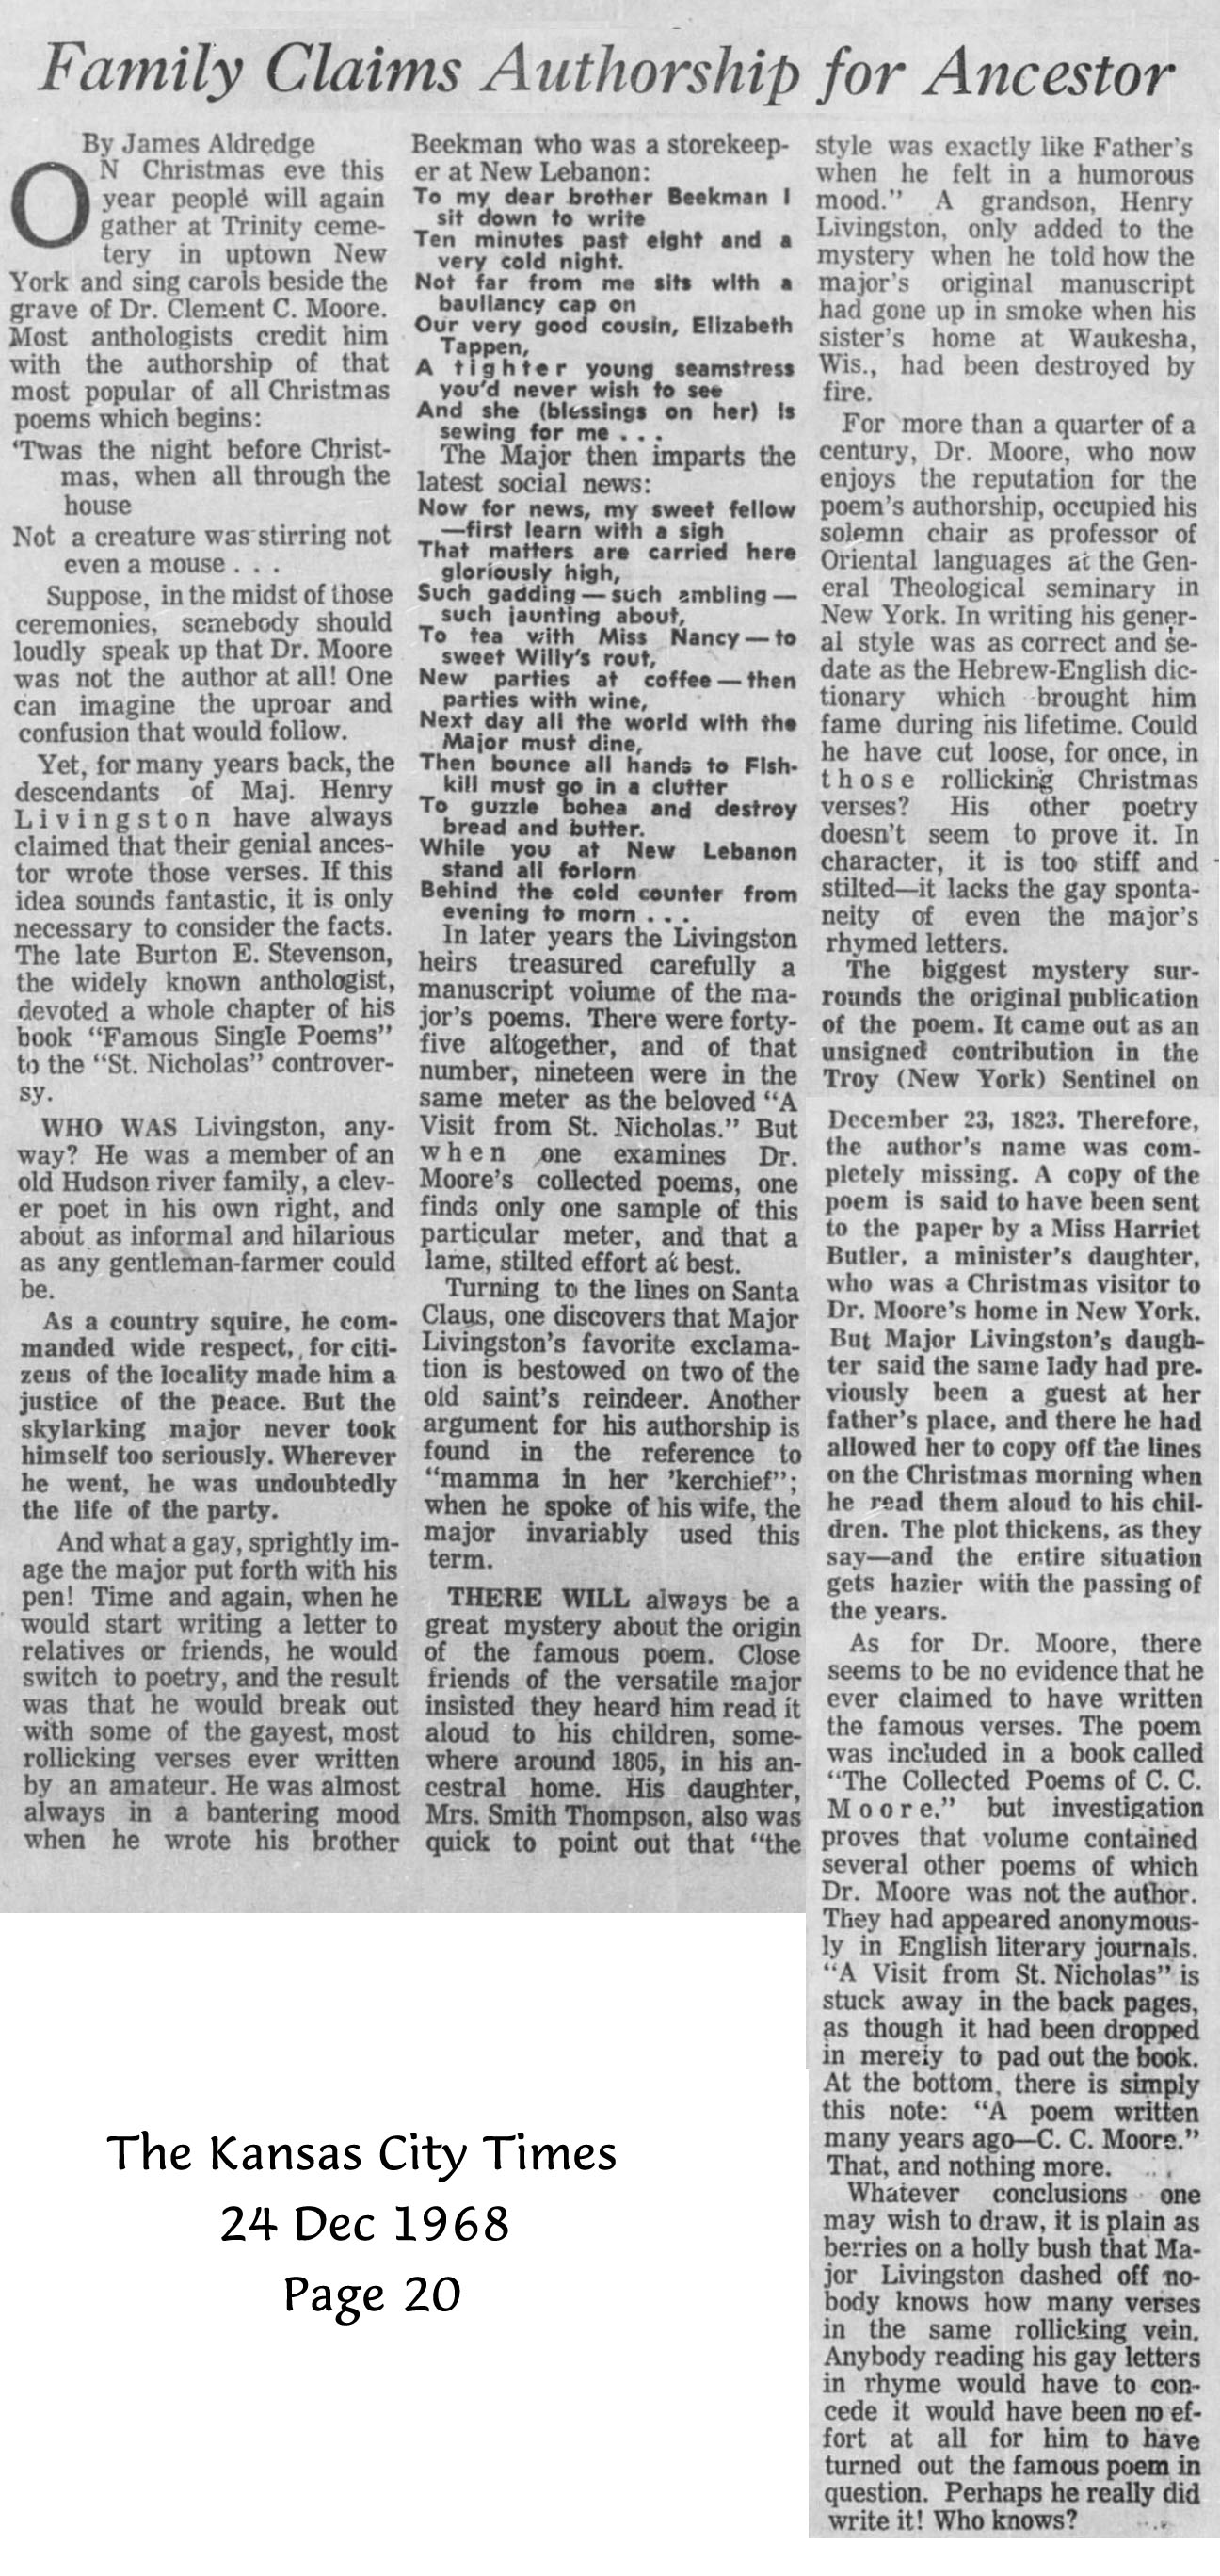 The Kansas City Times - 23 Dec 1968 - James Aldredge